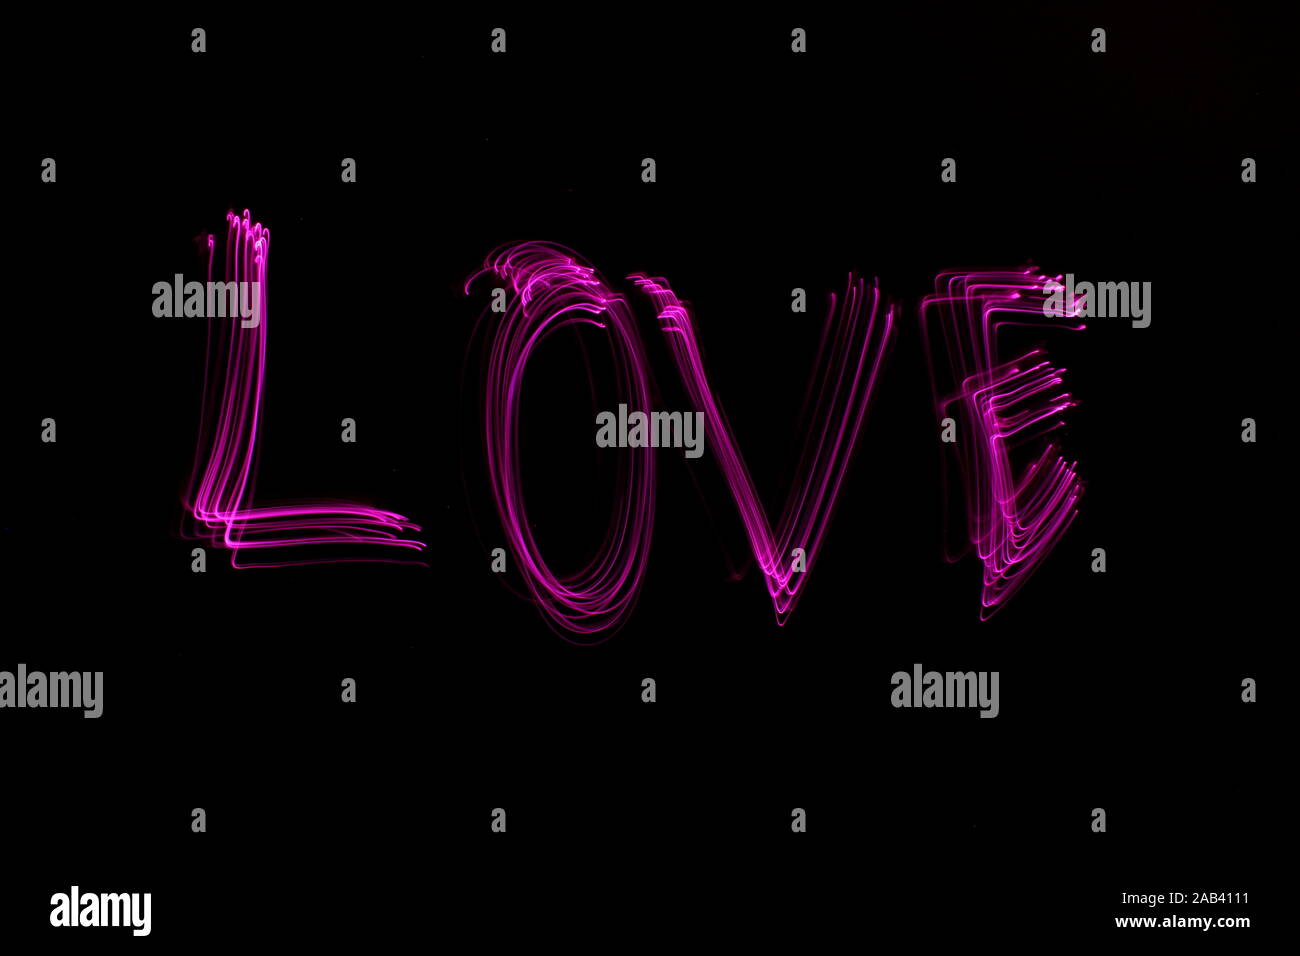 Longue exposition de photographie le mot 'Amour' en couleur néon rose dans un abrégé swirl, motif de lignes parallèles sur un fond noir. Peinture de lumière Banque D'Images